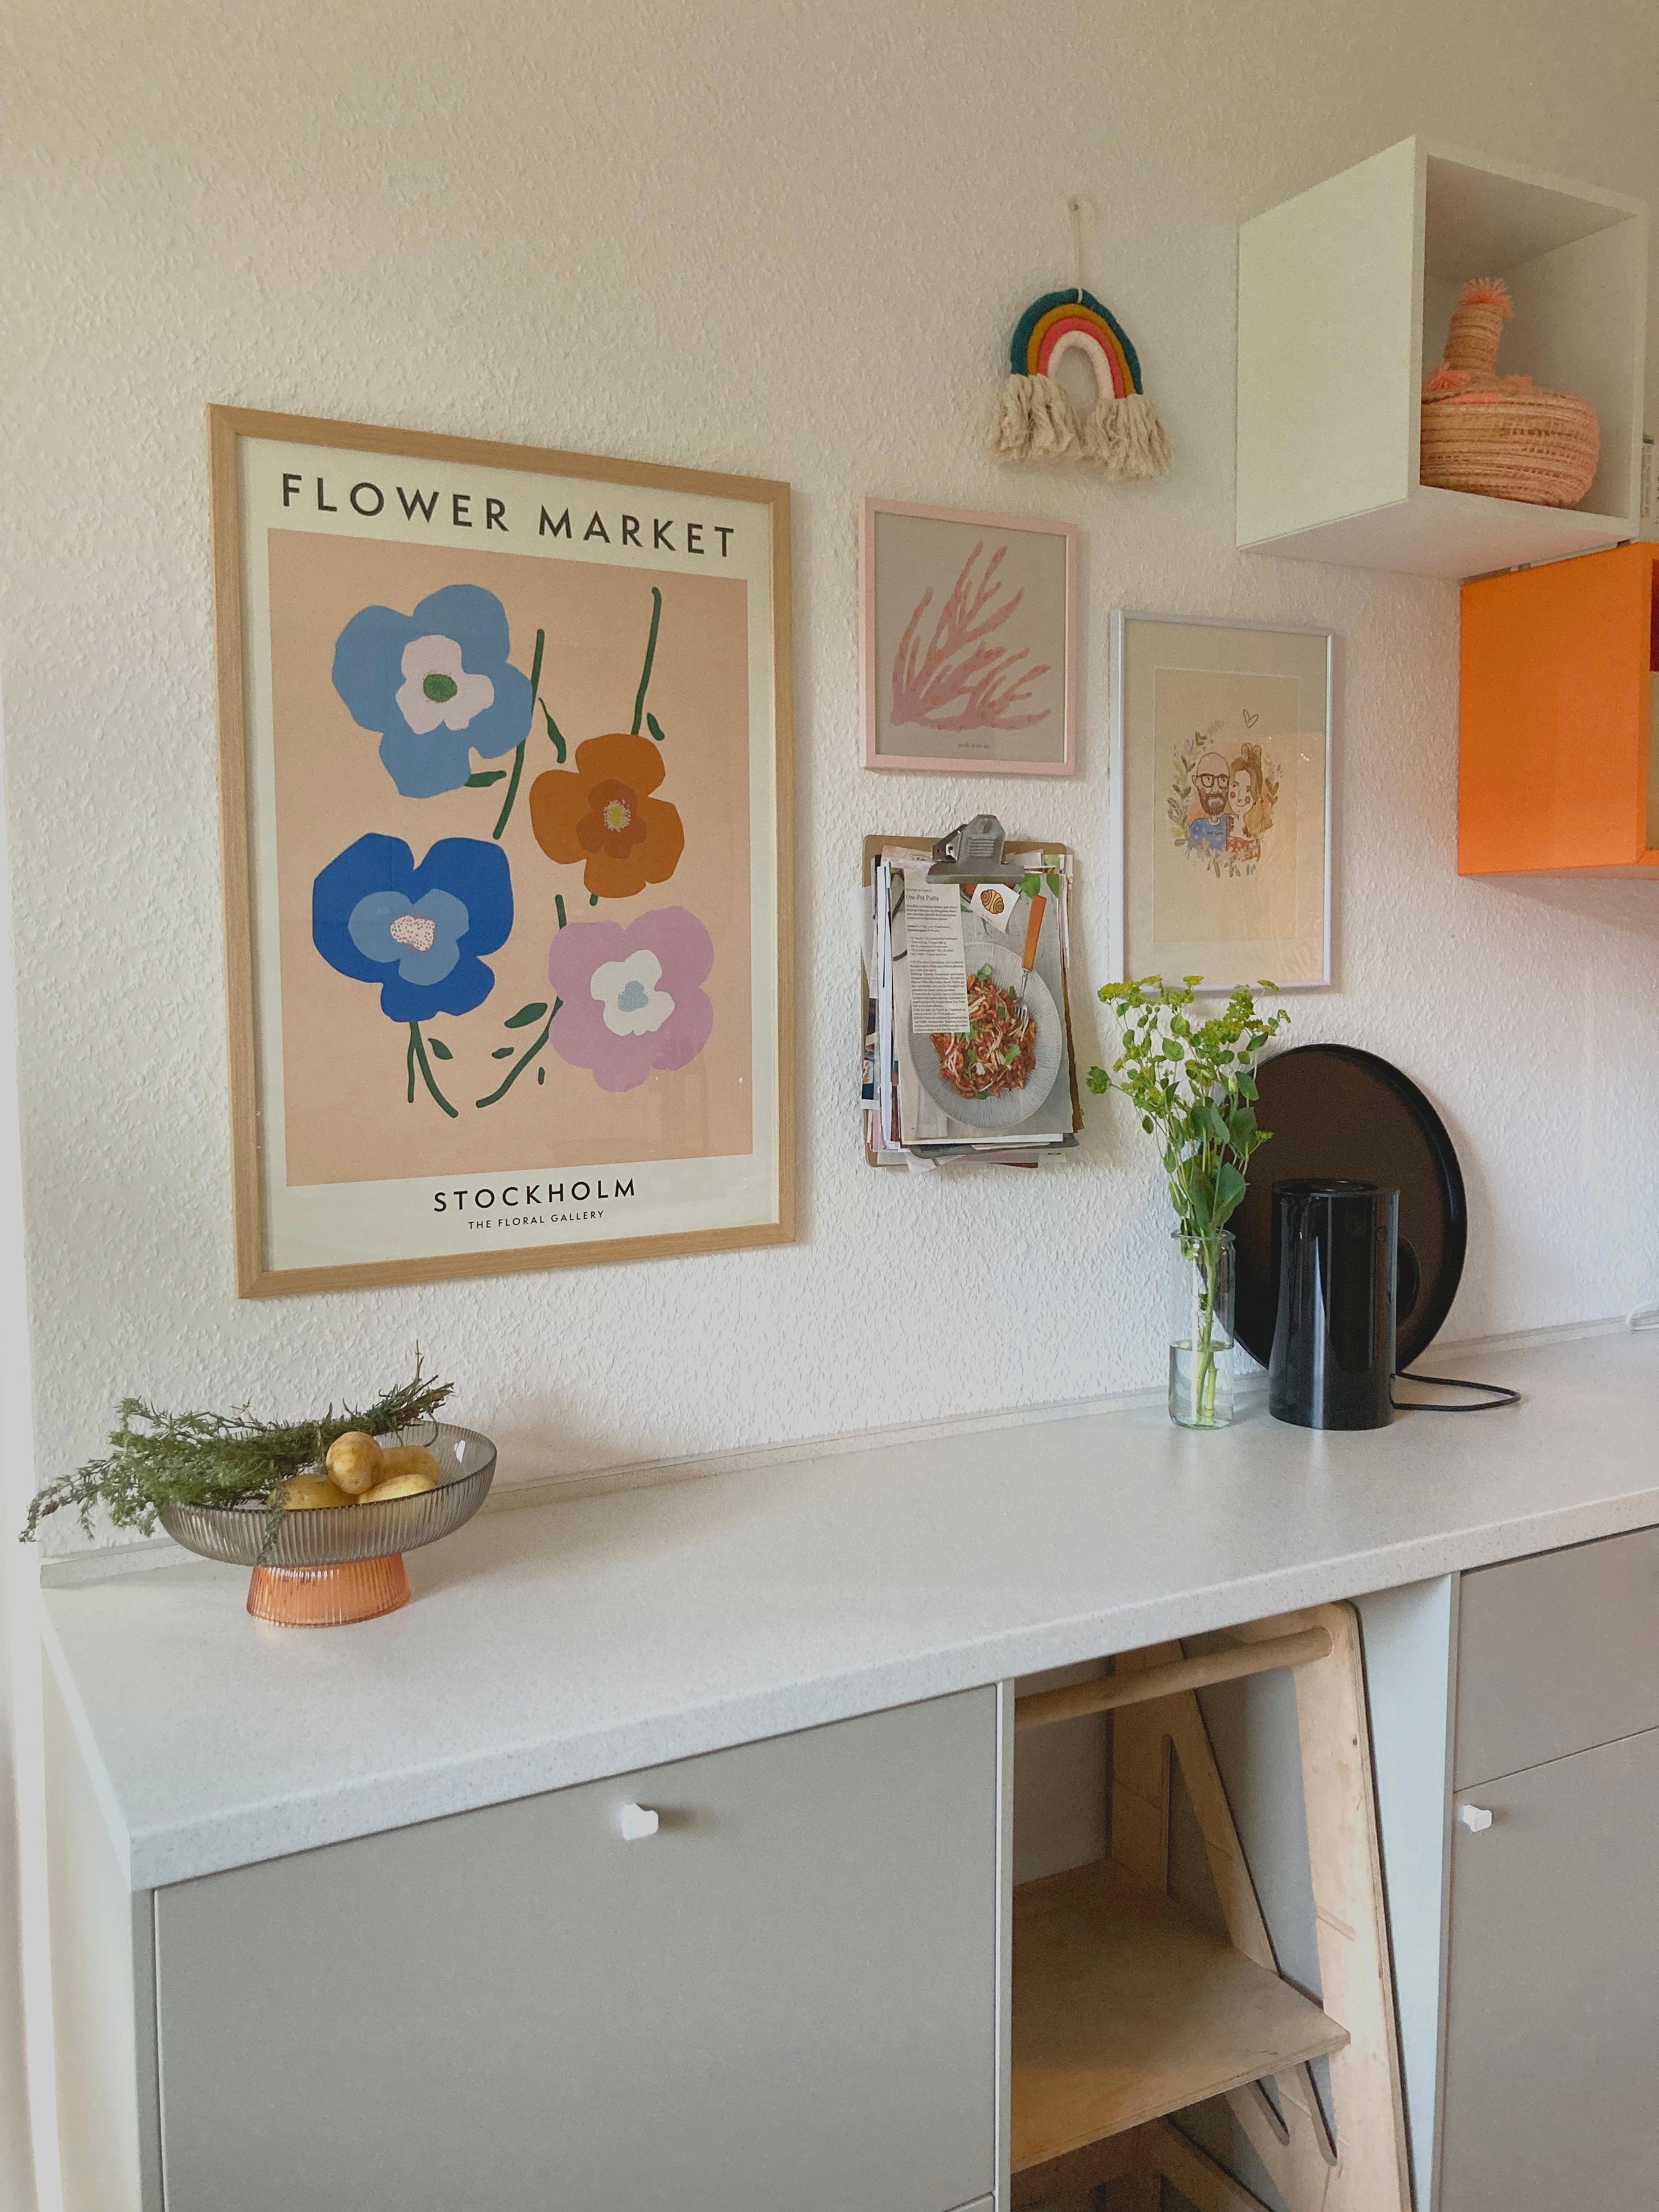 Apricot-Vibes in unserer #küche 🍑🍊🌸 #couchstyle #couchliebt #bildercollage #orange #beige